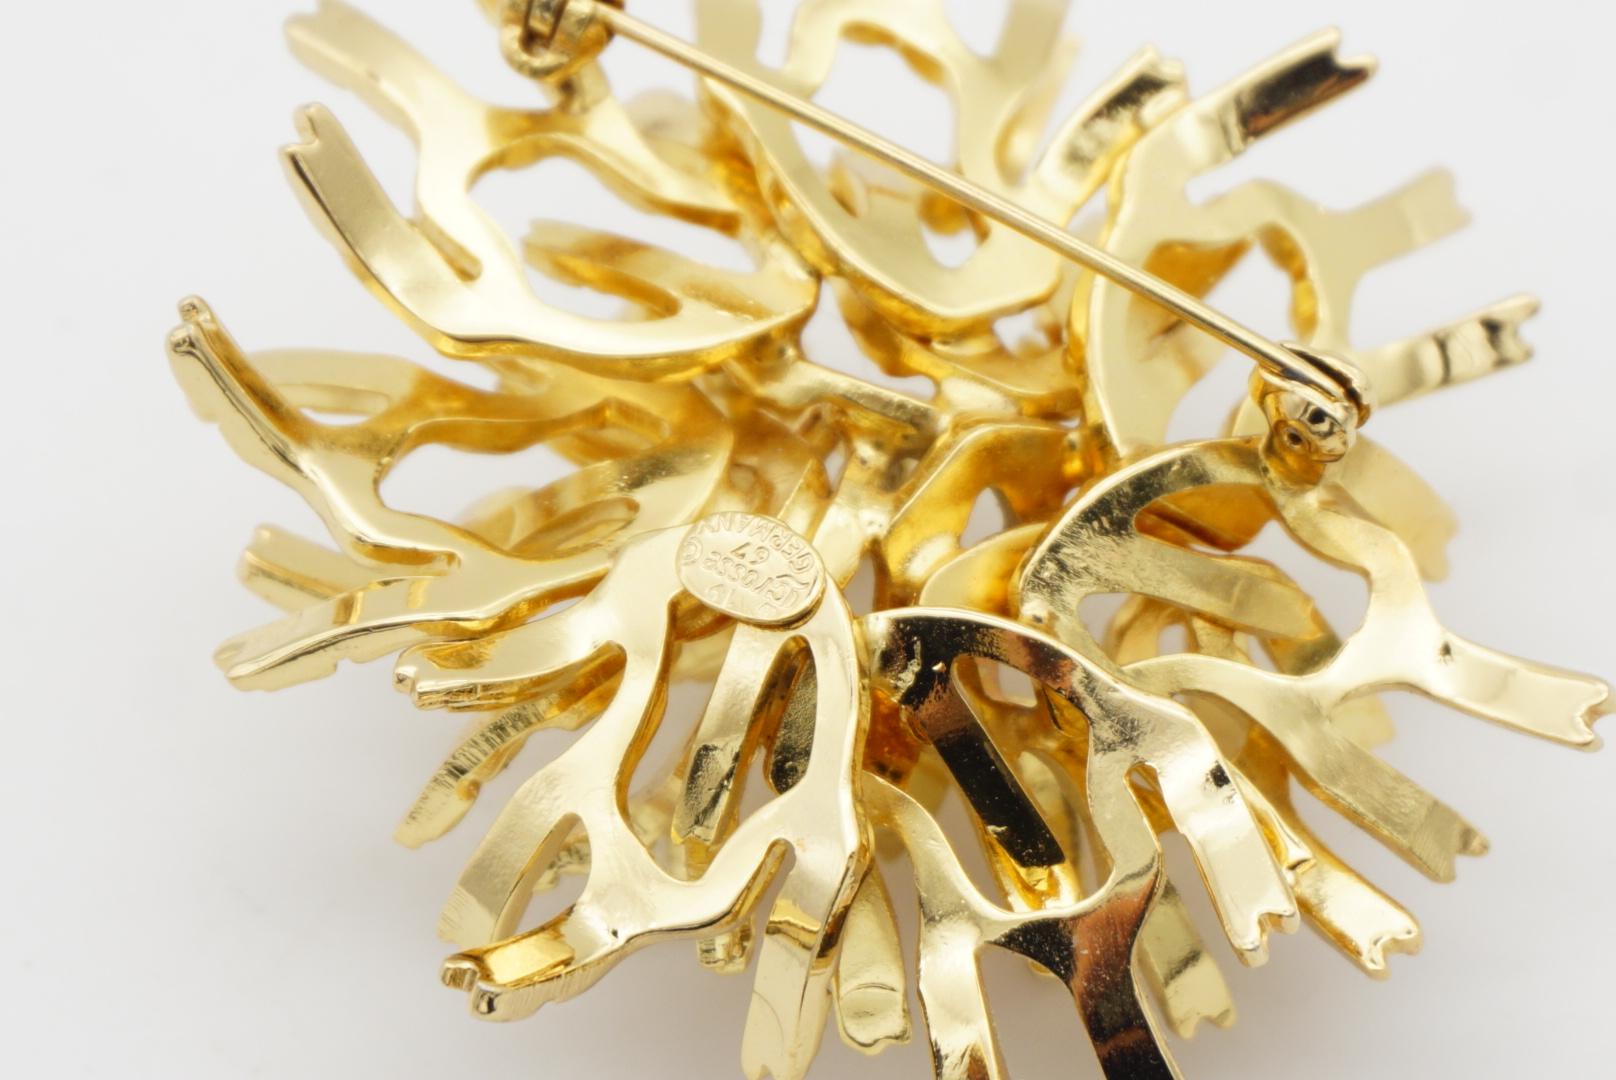 Christian Dior GROSSE 1967 Vintage Large Coral Flower Gold Exquisite Brooch For Sale 5